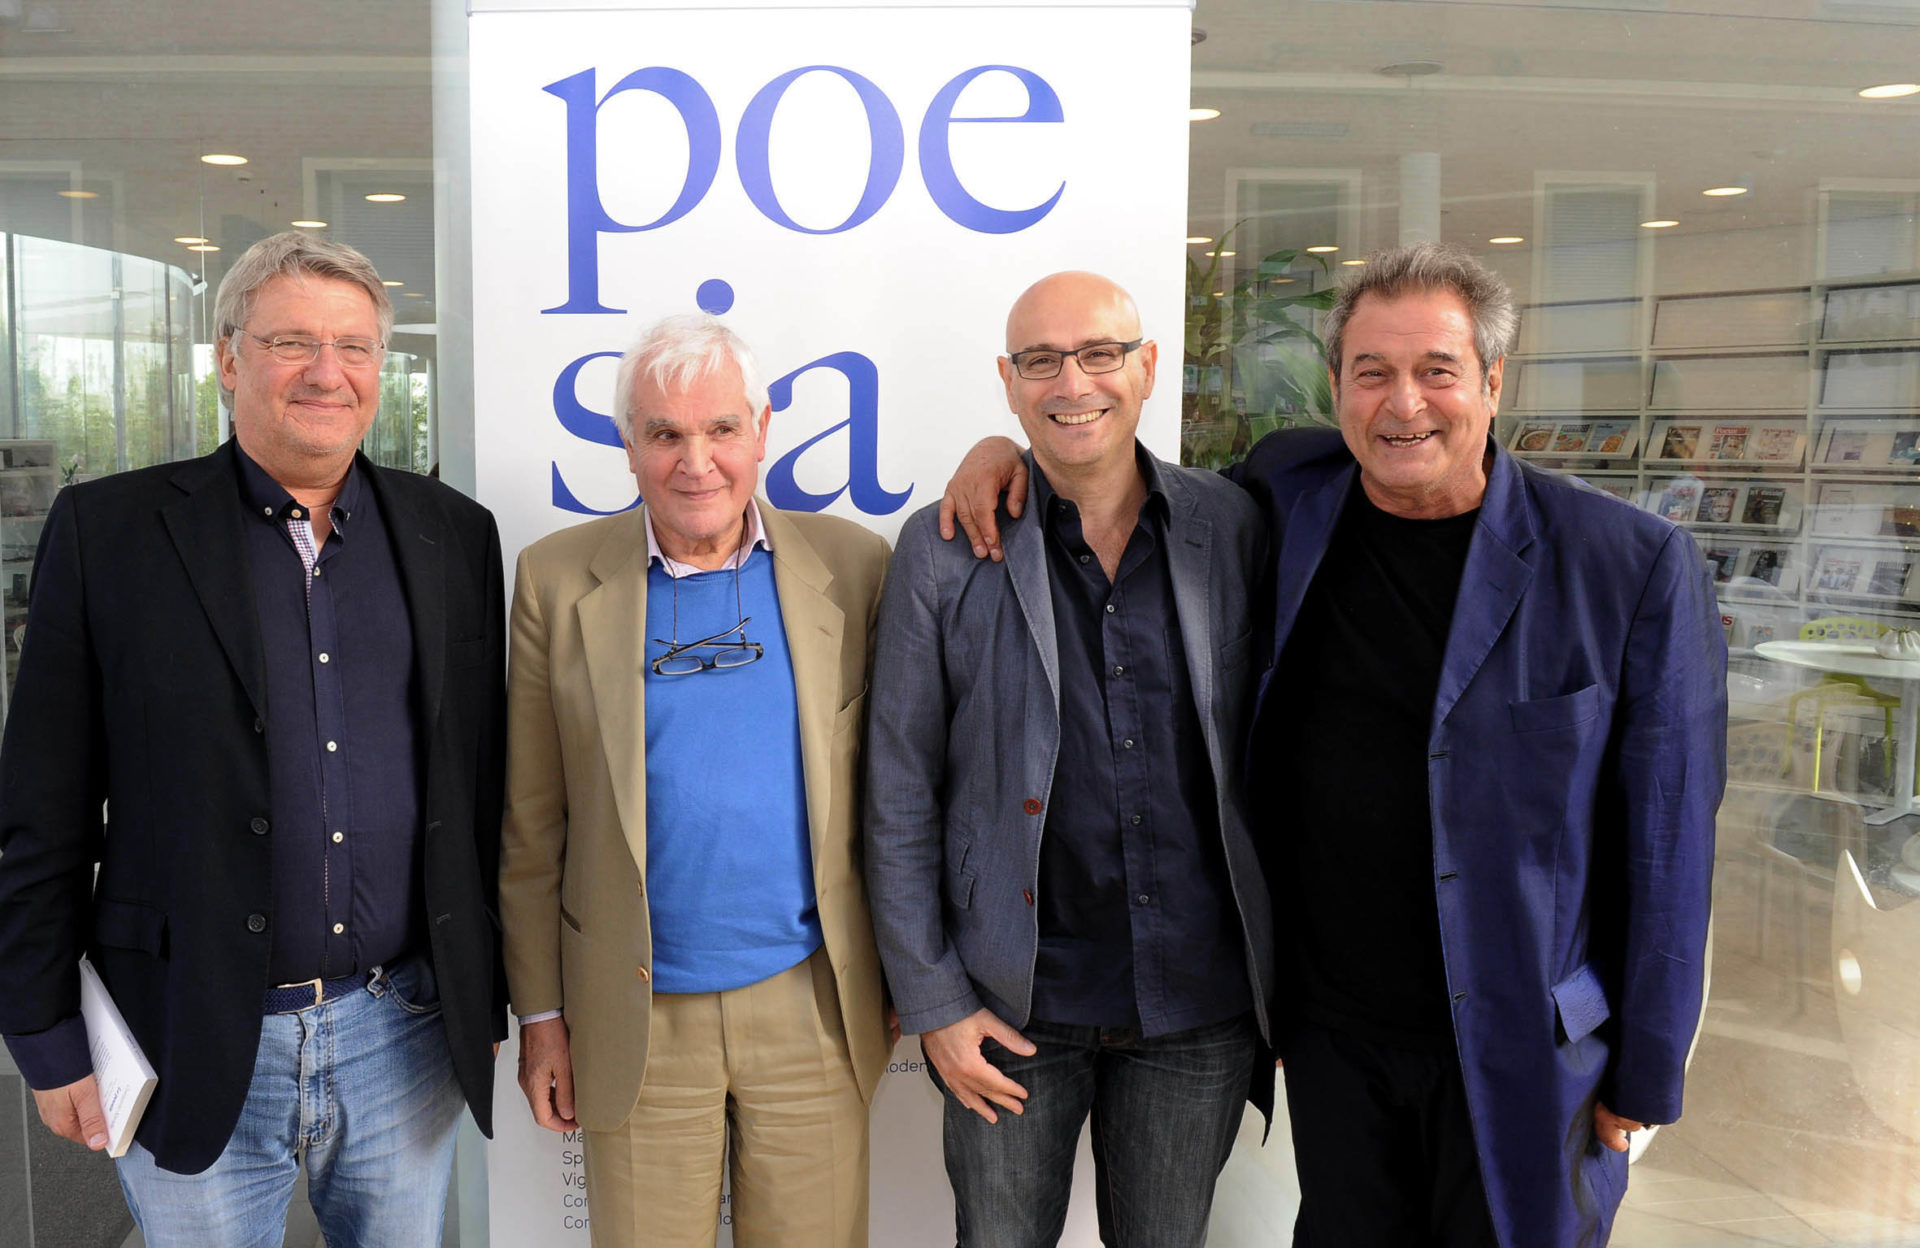 Alberto Bertoni, Nicola Crocetti, Roberto Galaverni ed Ennio Fantastichini